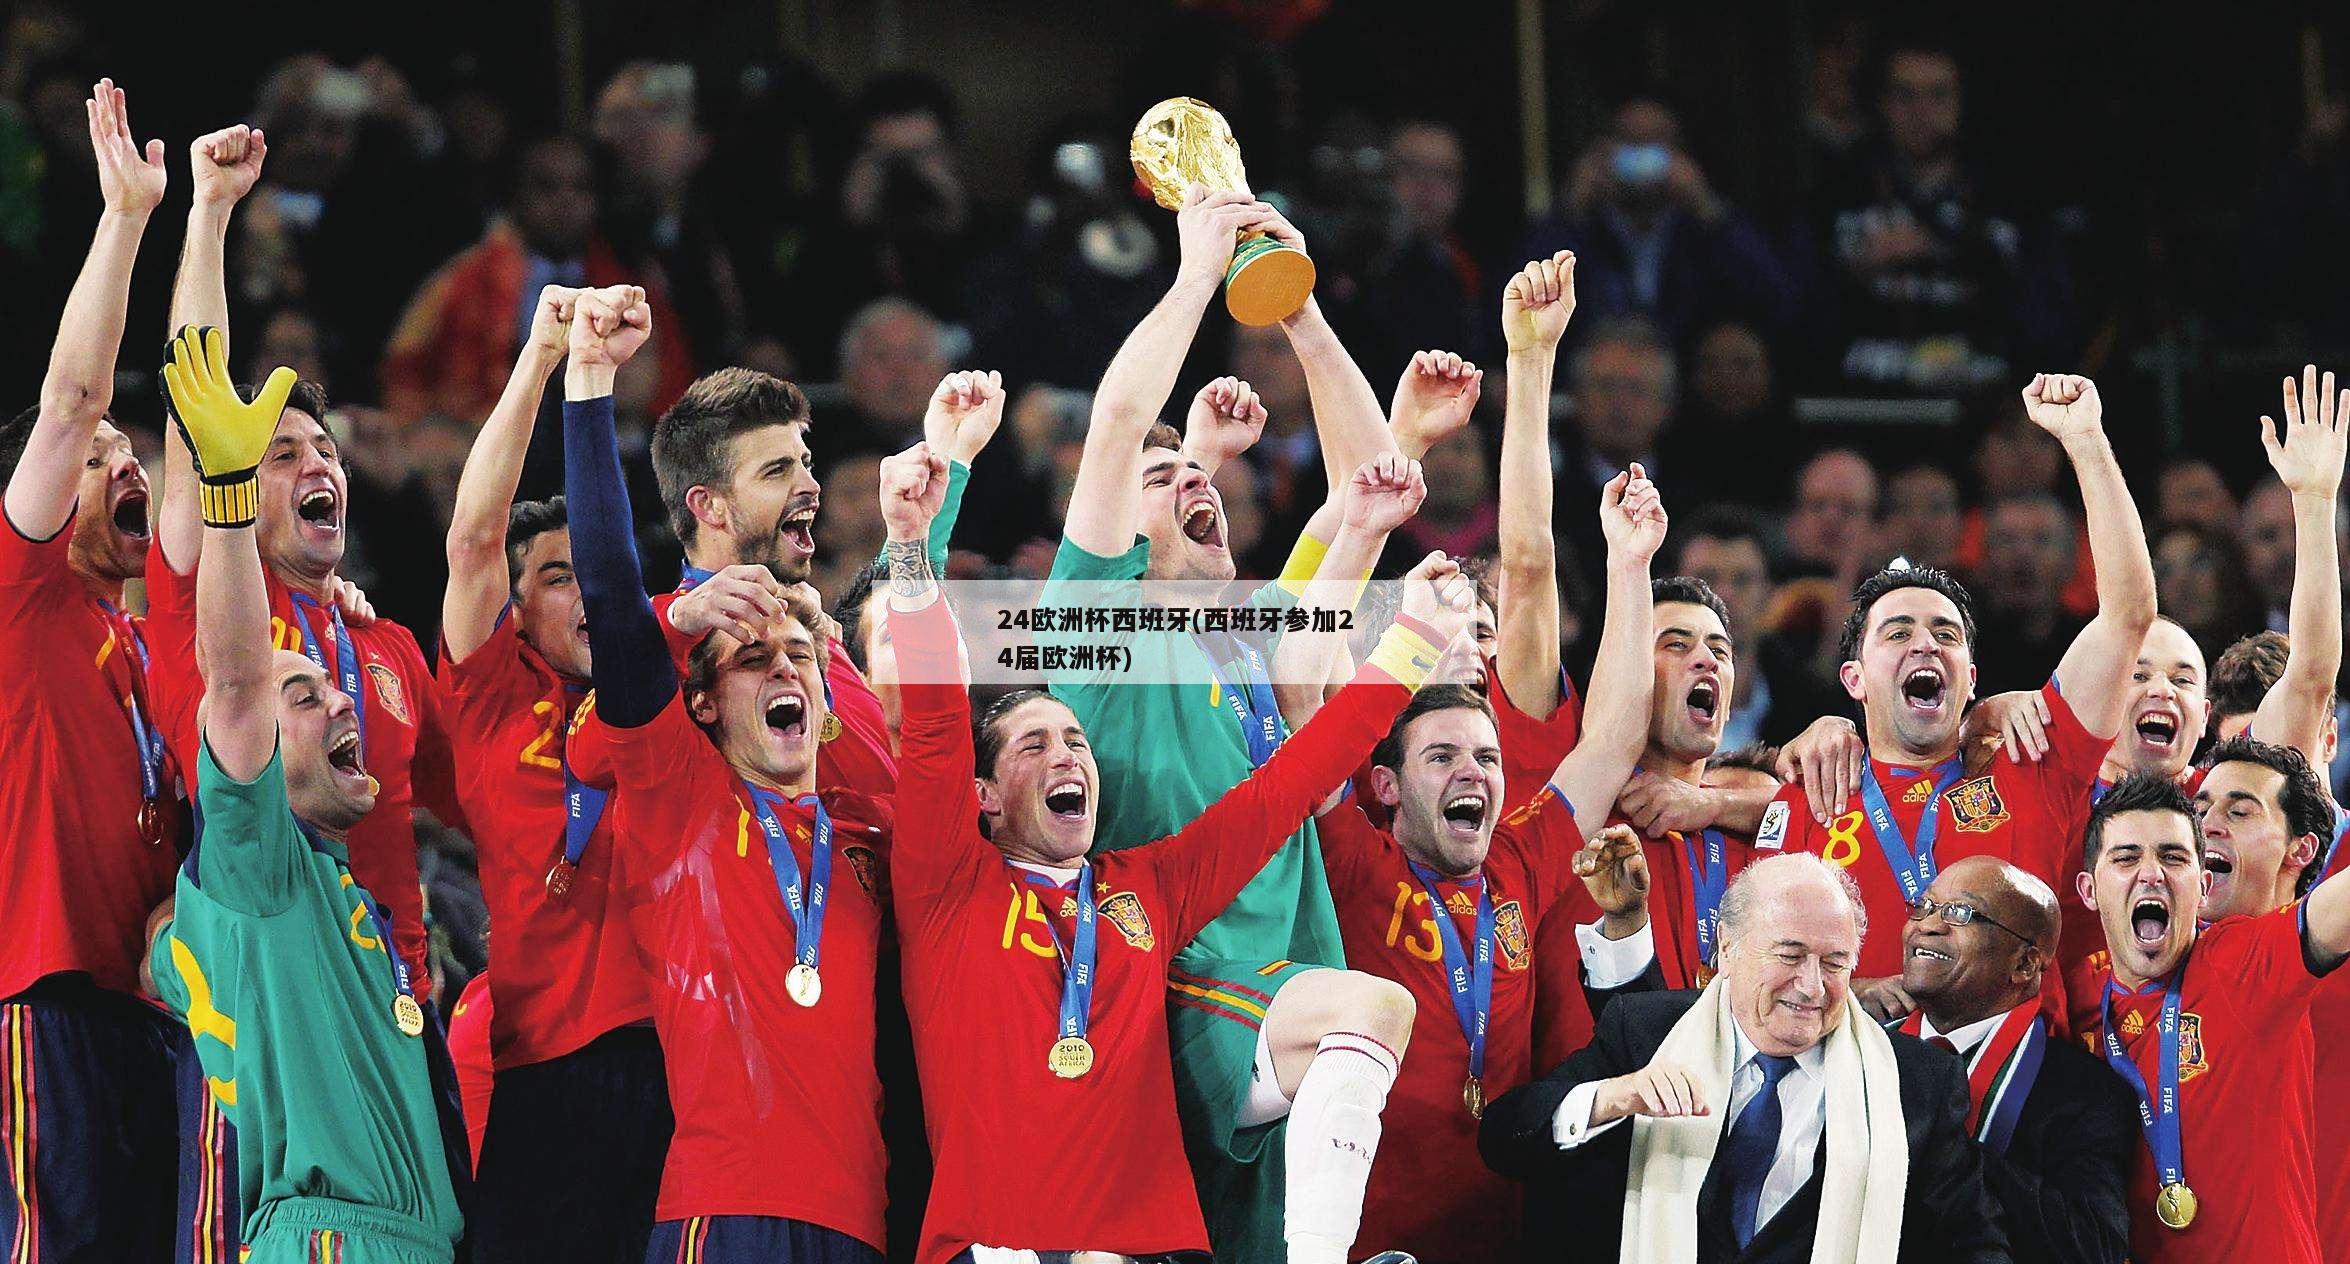 24欧洲杯西班牙(西班牙参加24届欧洲杯)